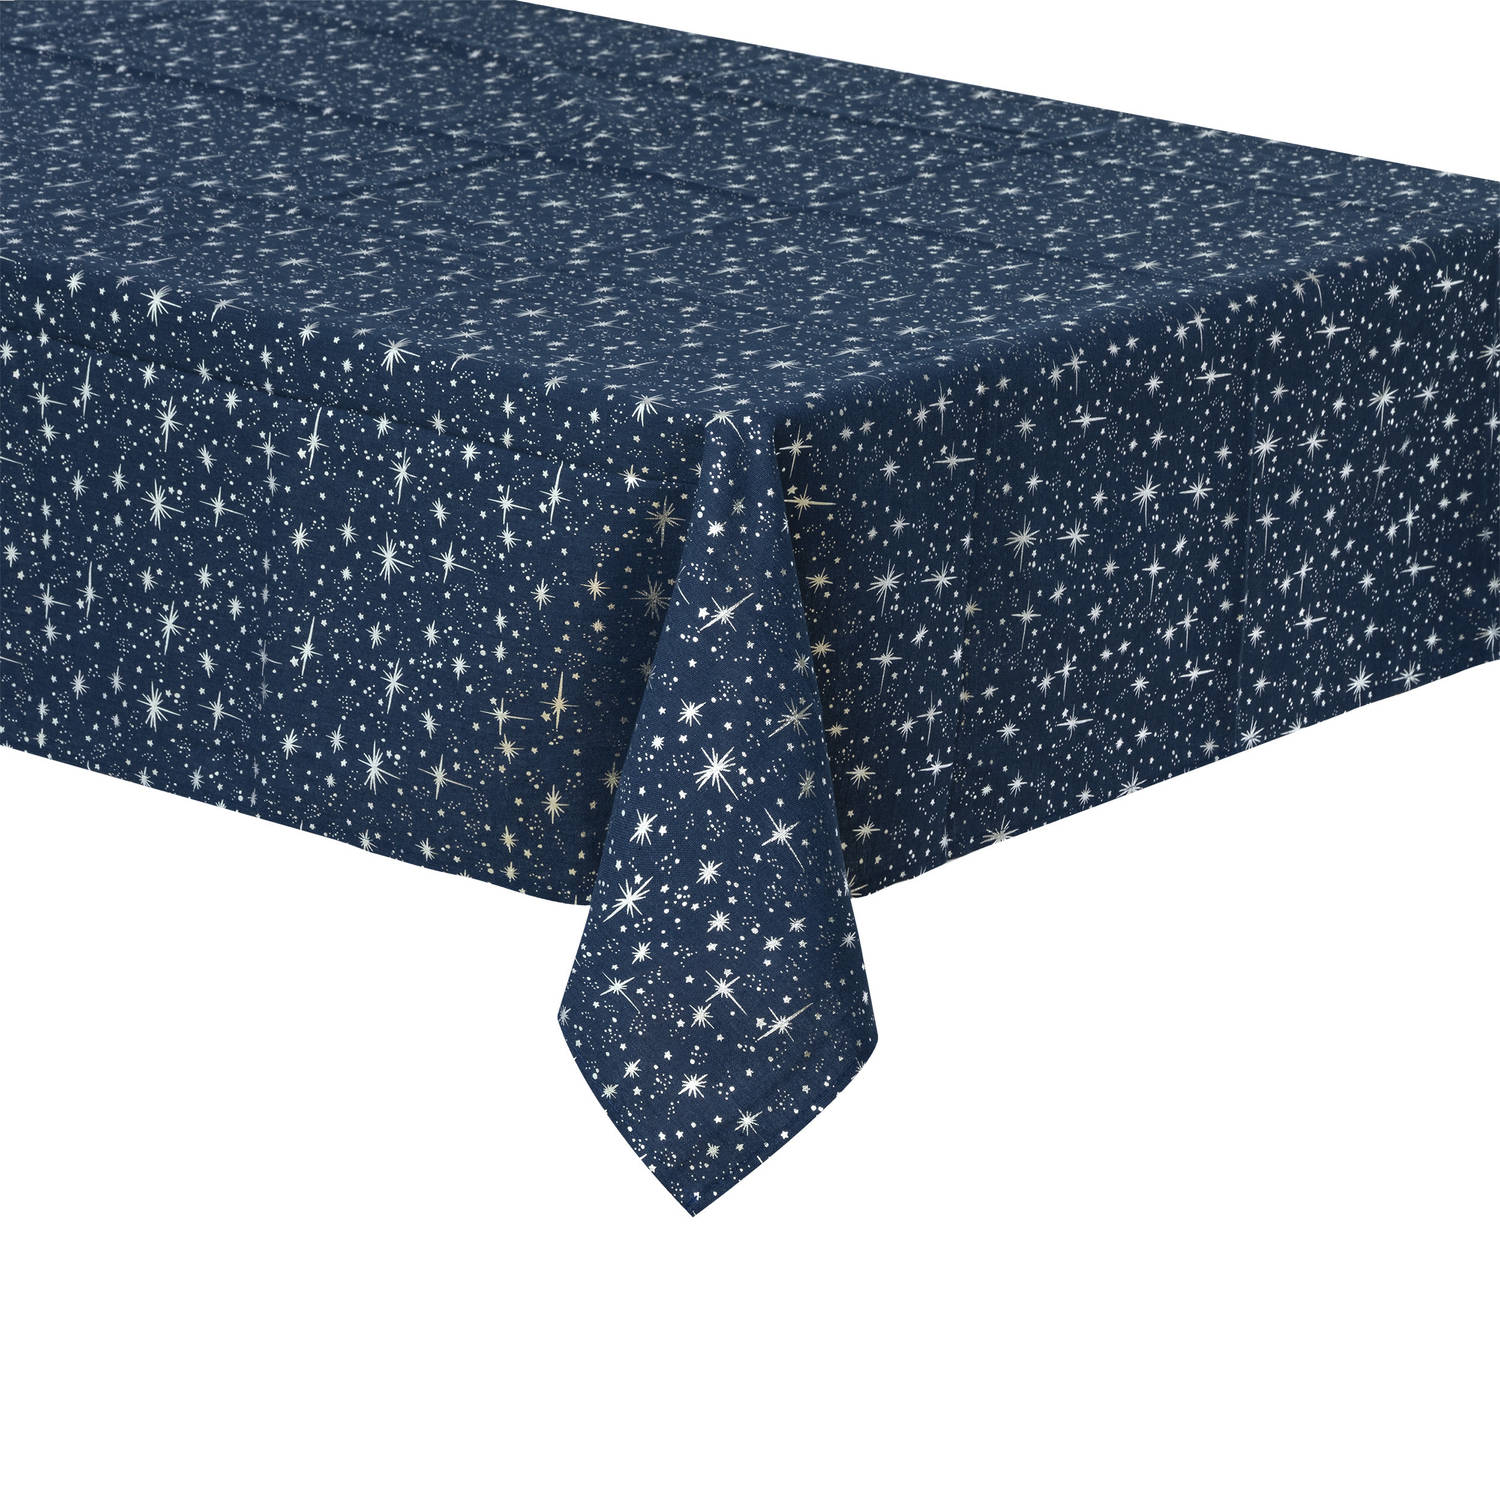 Tafelkleed/tafellaken blauw sterrenhemel van formaat 140 x 240 cm - Tafellakens | Blokker